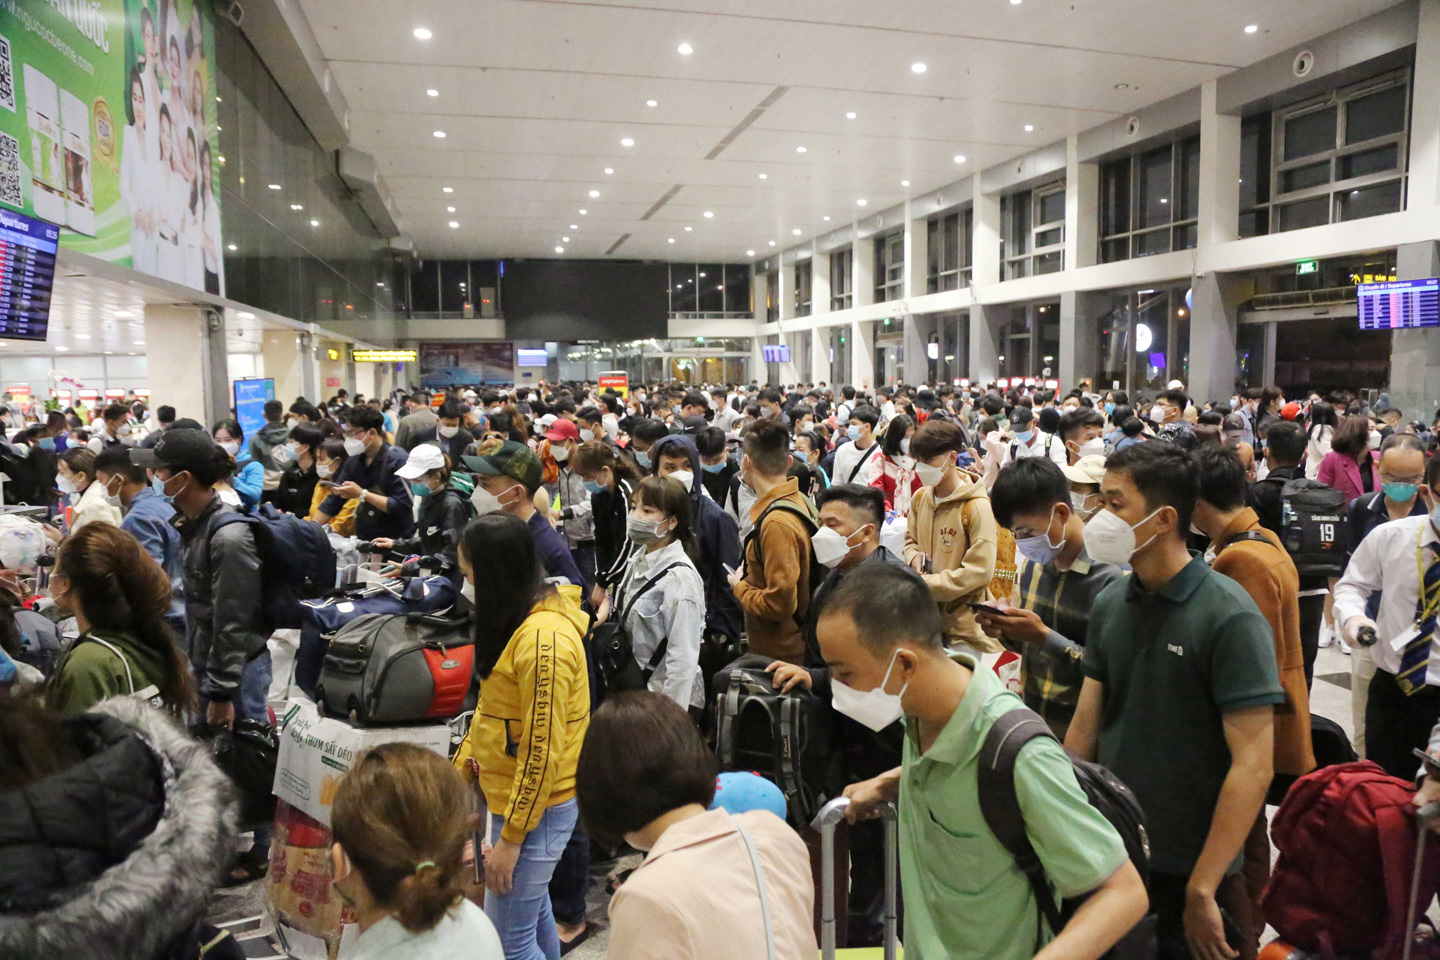 Sáng 27/1 (25 tháng Chạp), hàng nghìn người xếp hàng dài ở sân bay Tân Sơn Nhất (quận Tân Bình, TP.HCM) để làm thủ tục lên máy bay, về quê đón Tết.